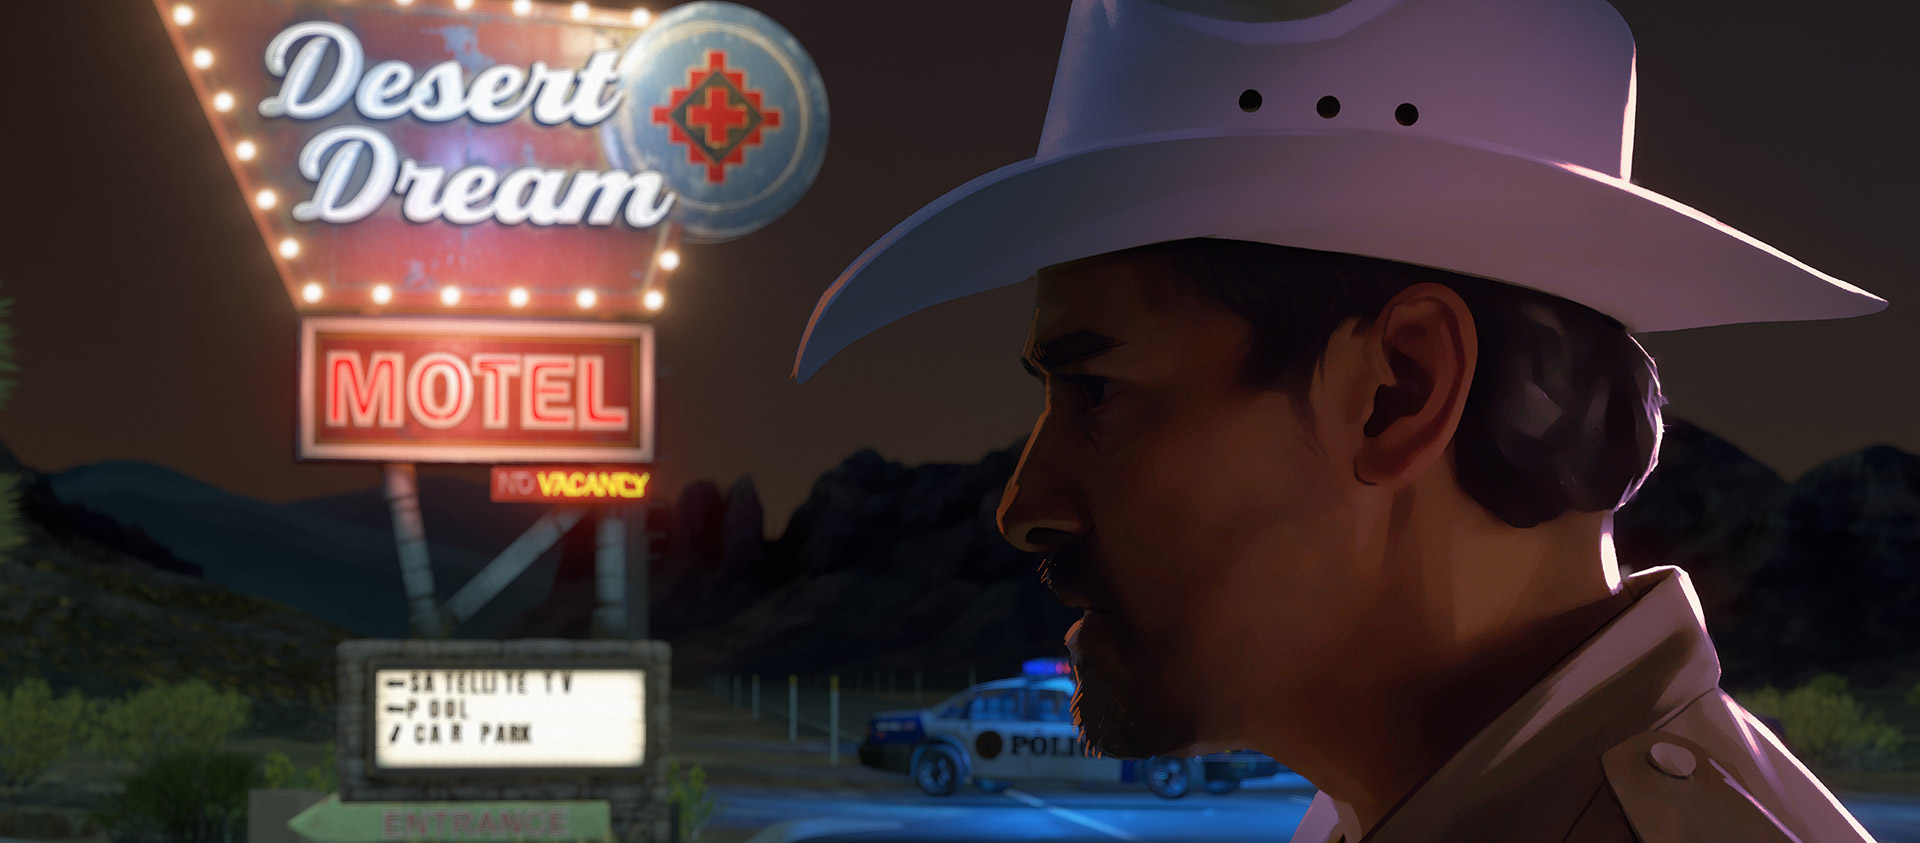 戴著牛仔帽的執法人員站在汽車旅館的霓虹燈招牌下。